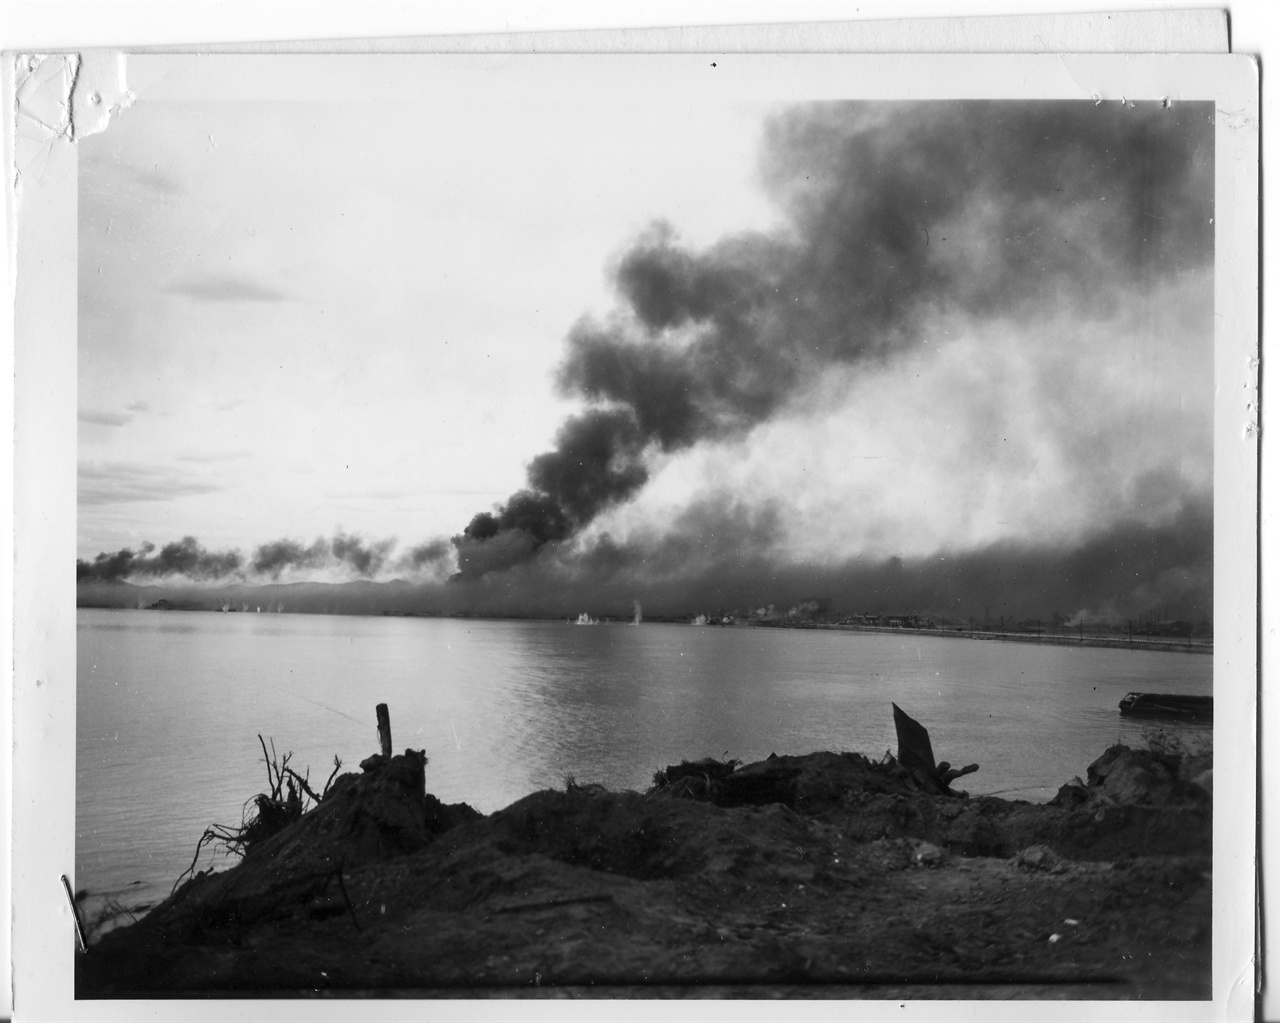  e112 1950. 9. 16. 미 군함의 함포사격으로 불바다가 된 인천항 일대.